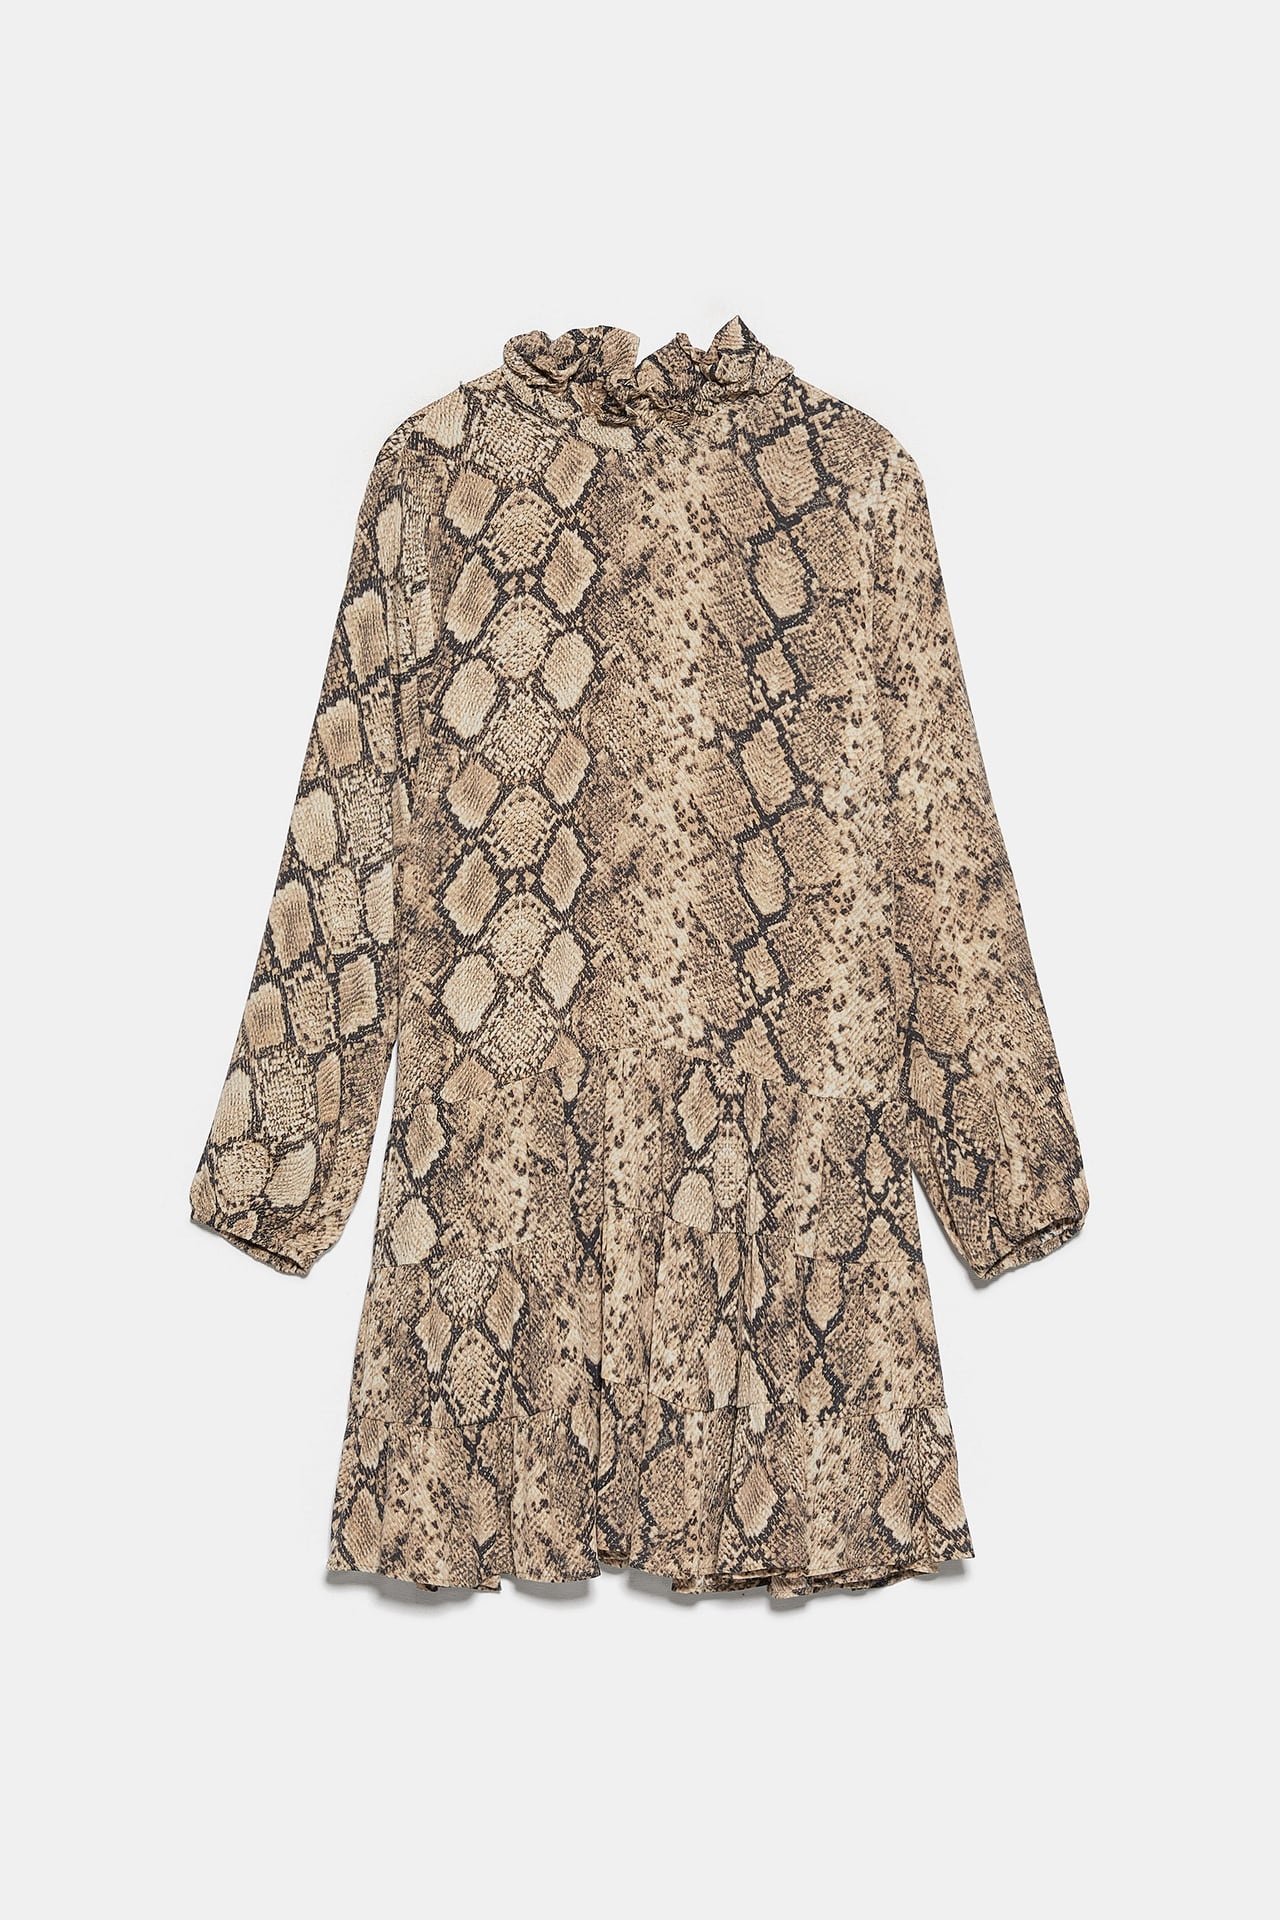 Vástago Perspicaz Convertir Zara: ¿Serpiente o cebra? Estos son los vestidos con el animal print de  este otoño | Moda